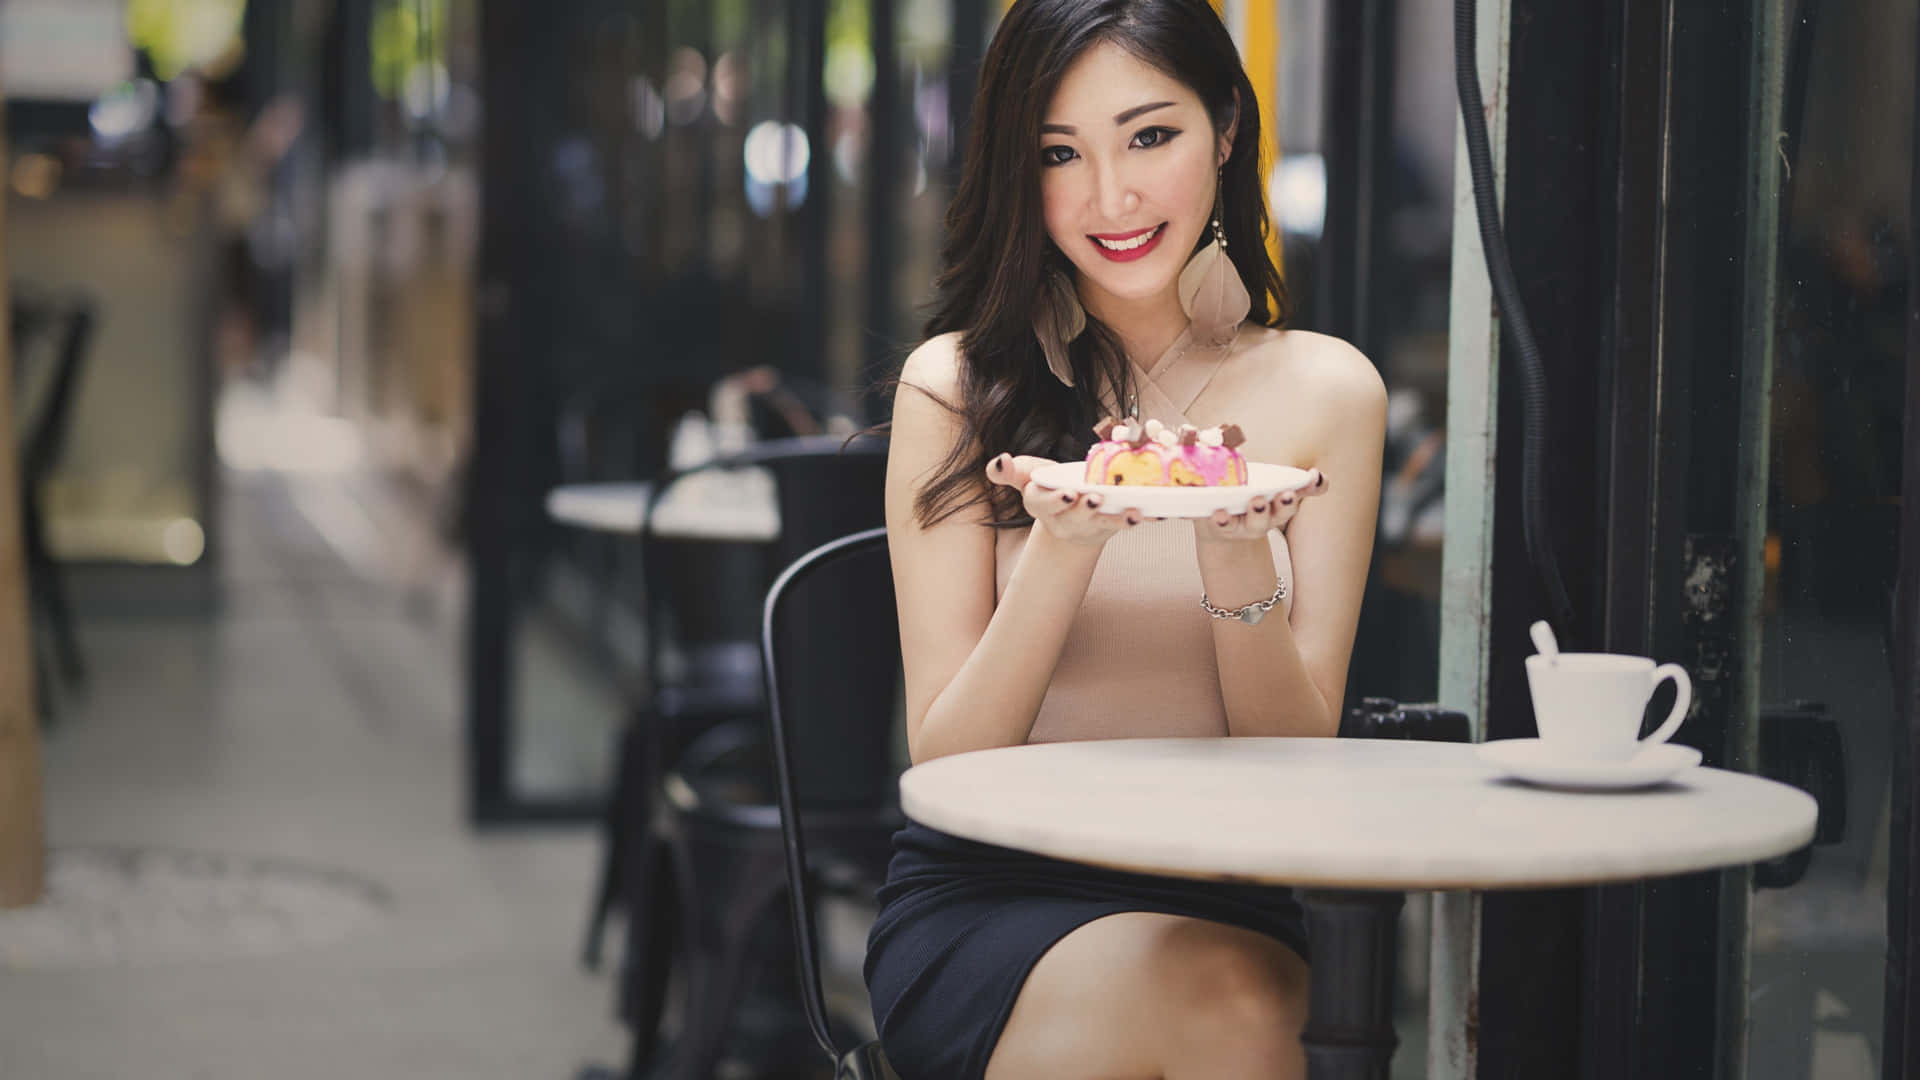 Thai Girl With Dessert Wallpaper